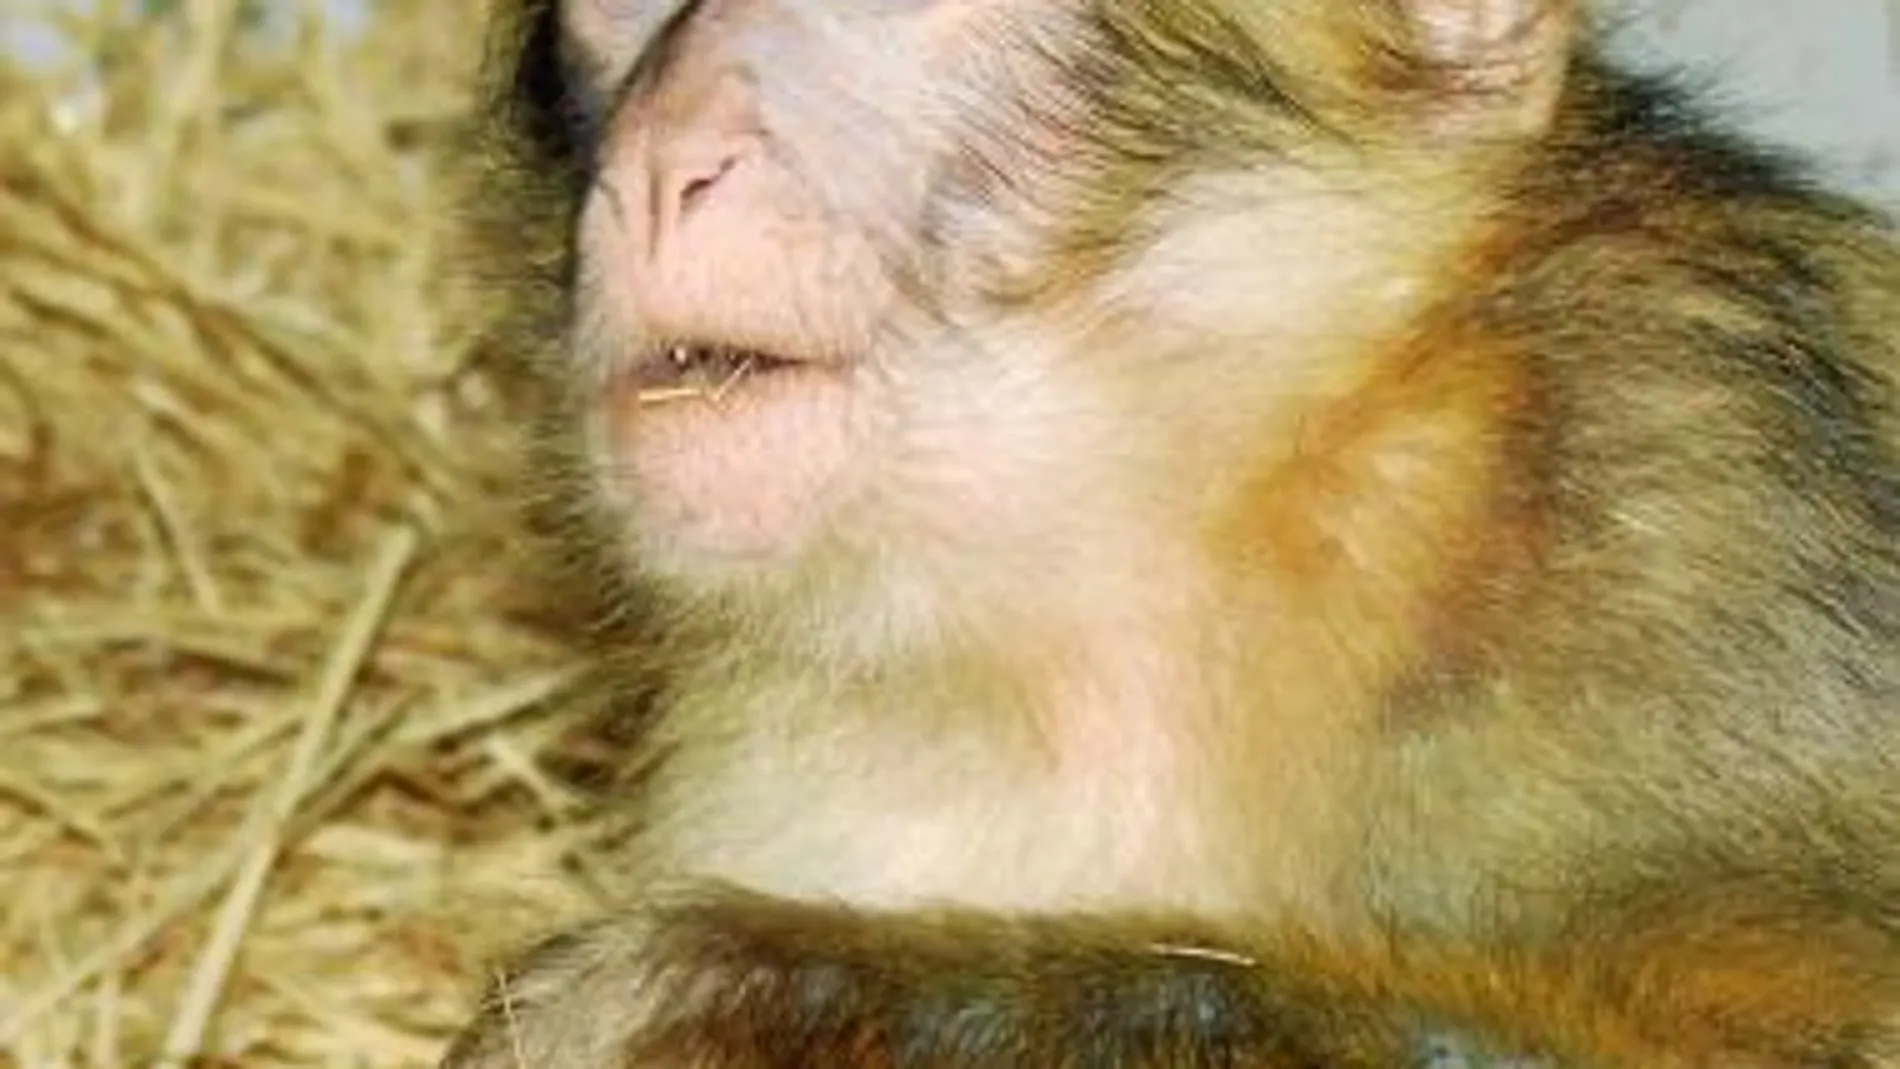 Noa aún es un bebé y está recuperándose de sus heridas en un centro especializado en primates, donde empieza a socializarse